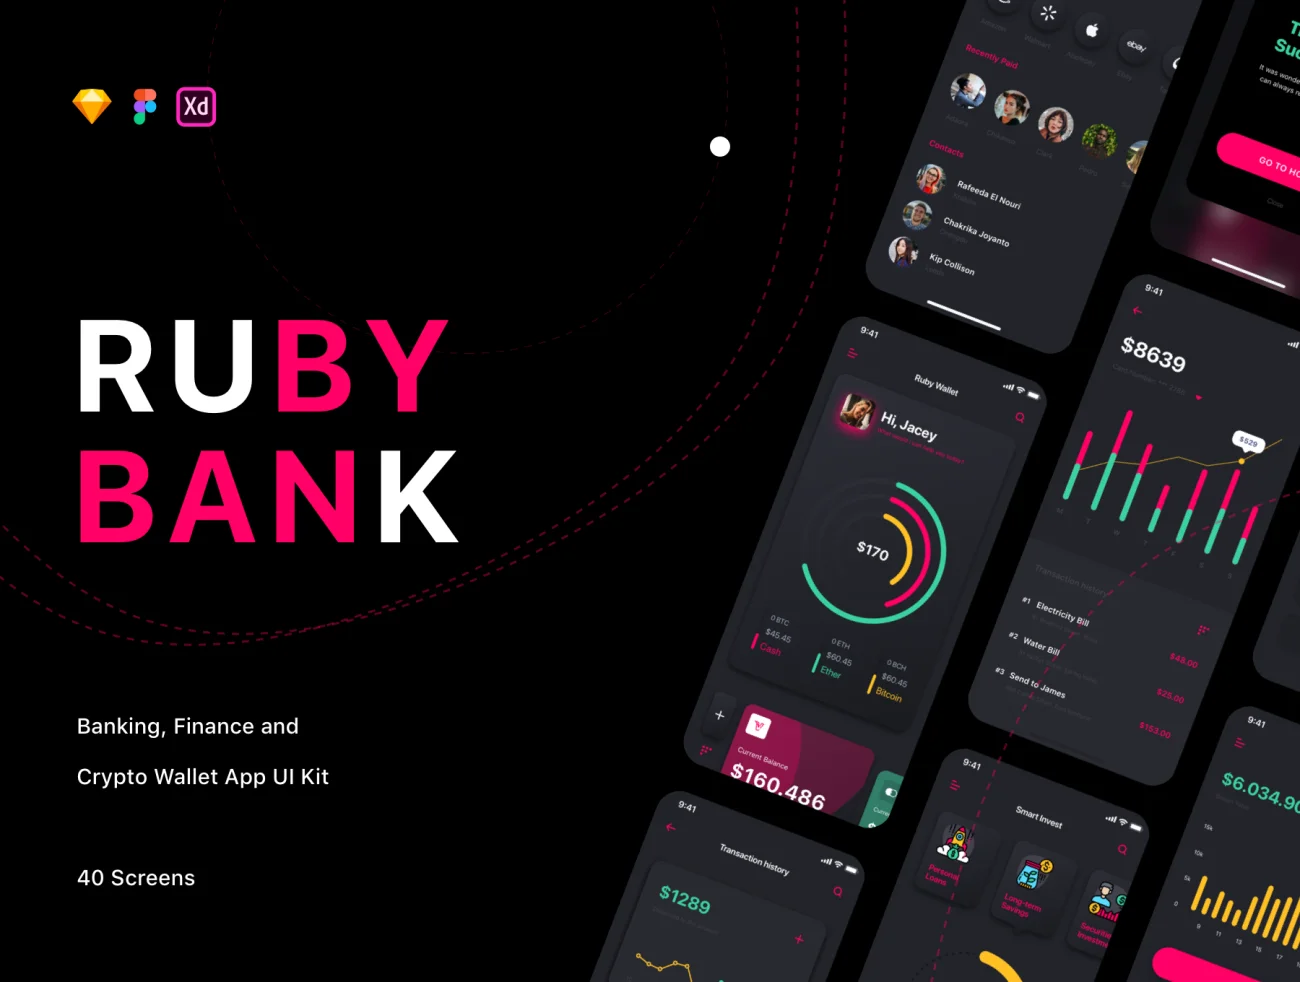 Ruby - Banking App UI Kit 40屏银行金融加密数字货币电子钱包应用UI设计套件-UI/UX-到位啦UI